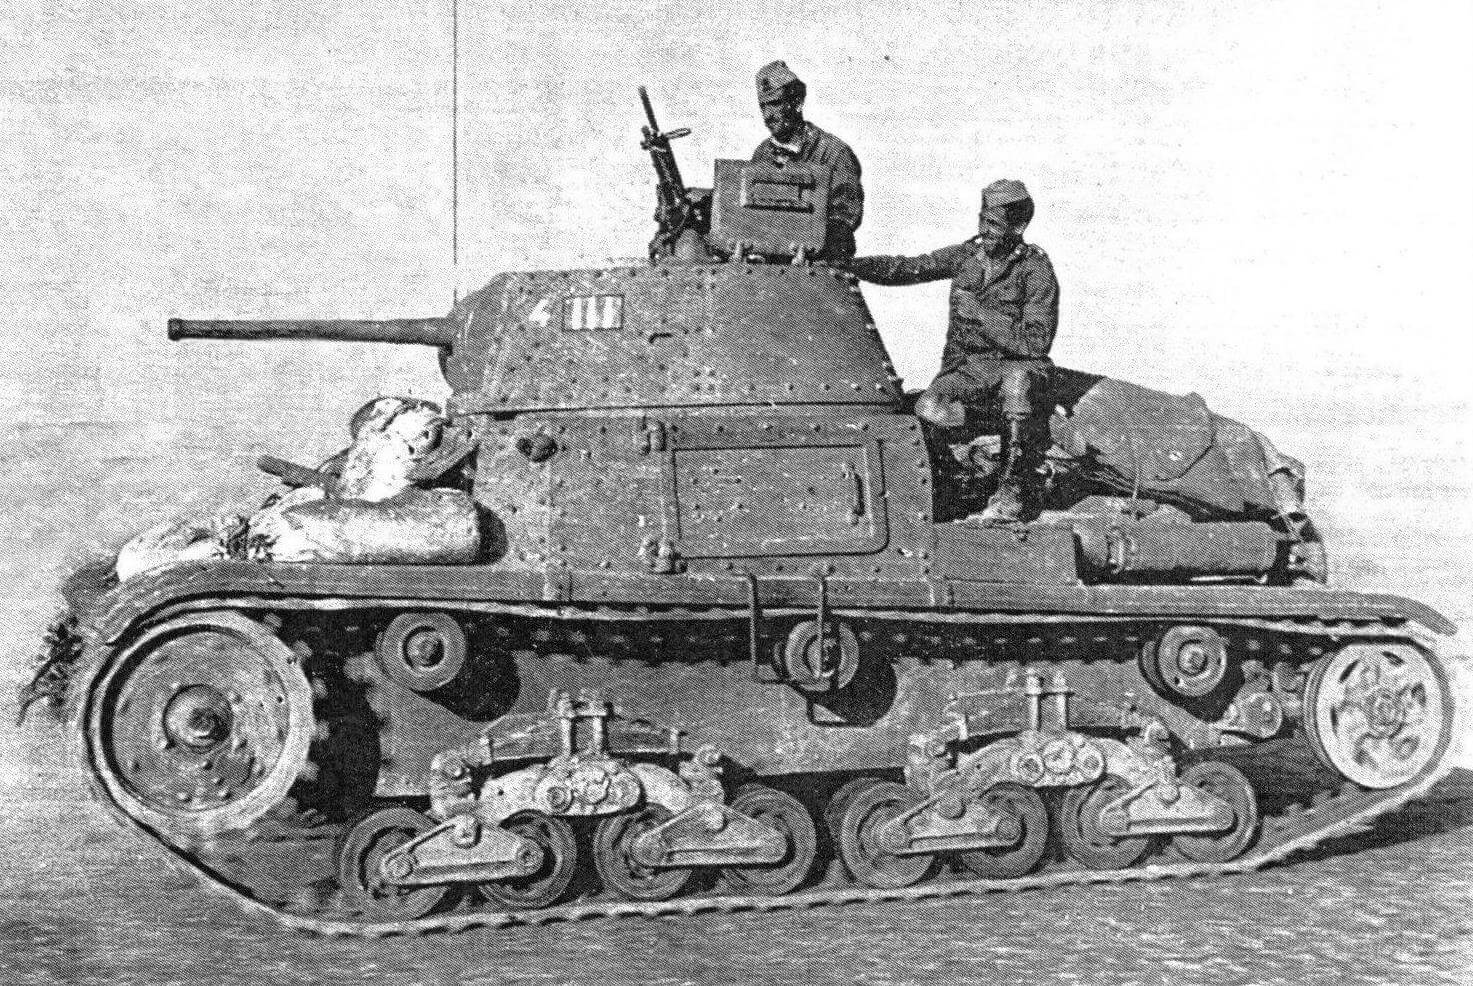 Средний танк М13/40 в североафриканской пустыне, 1942 год. Обращает на себя внимание 8-мм пулемет Breda, установленный в положение для зенитной стрельбы